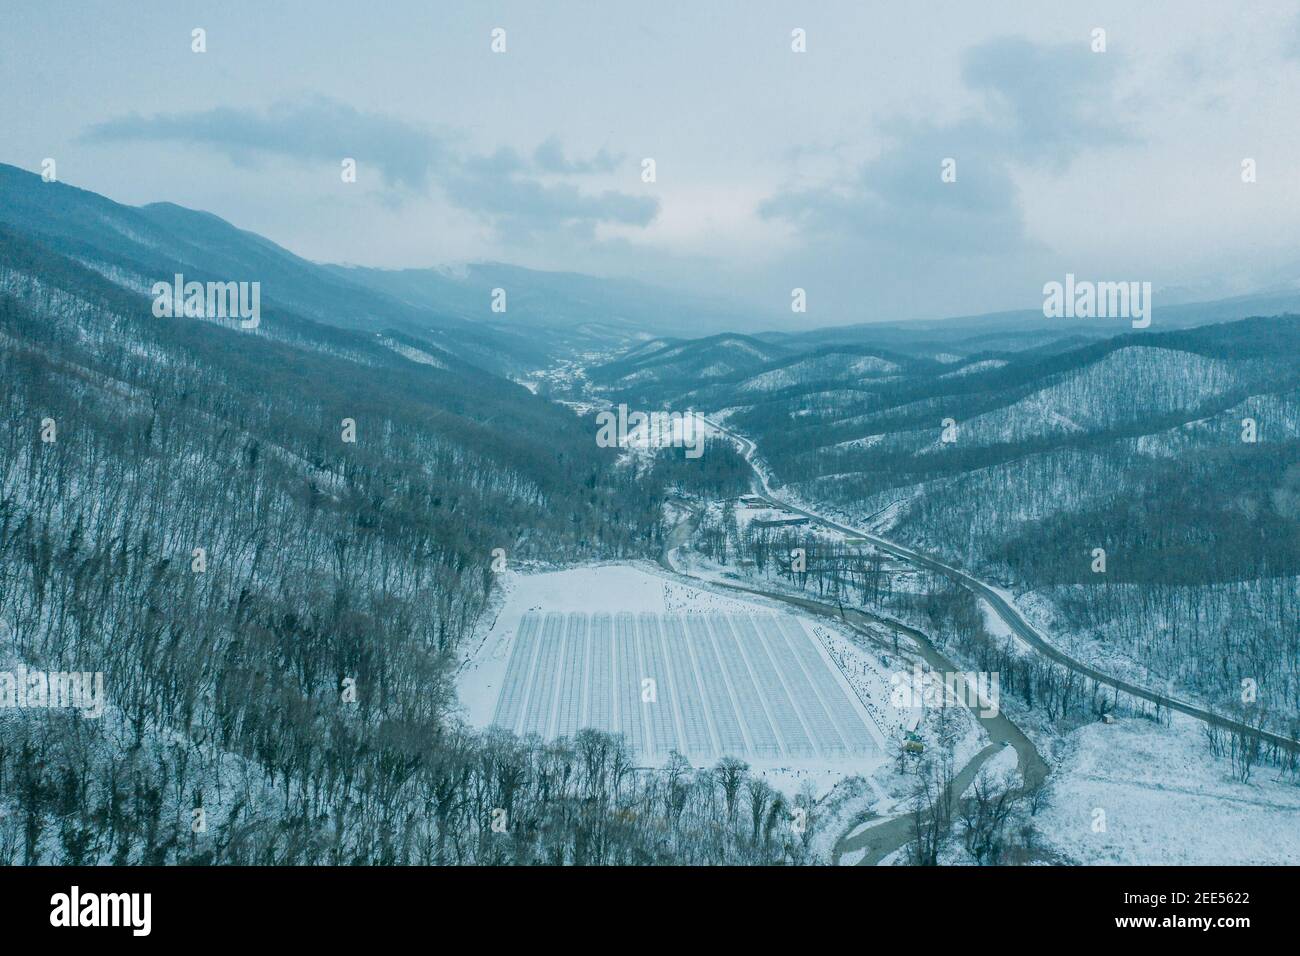 Vista aerea dal drone sopra la gola di montagna tra le vette in inverno in tempo nevoso. Foto Stock